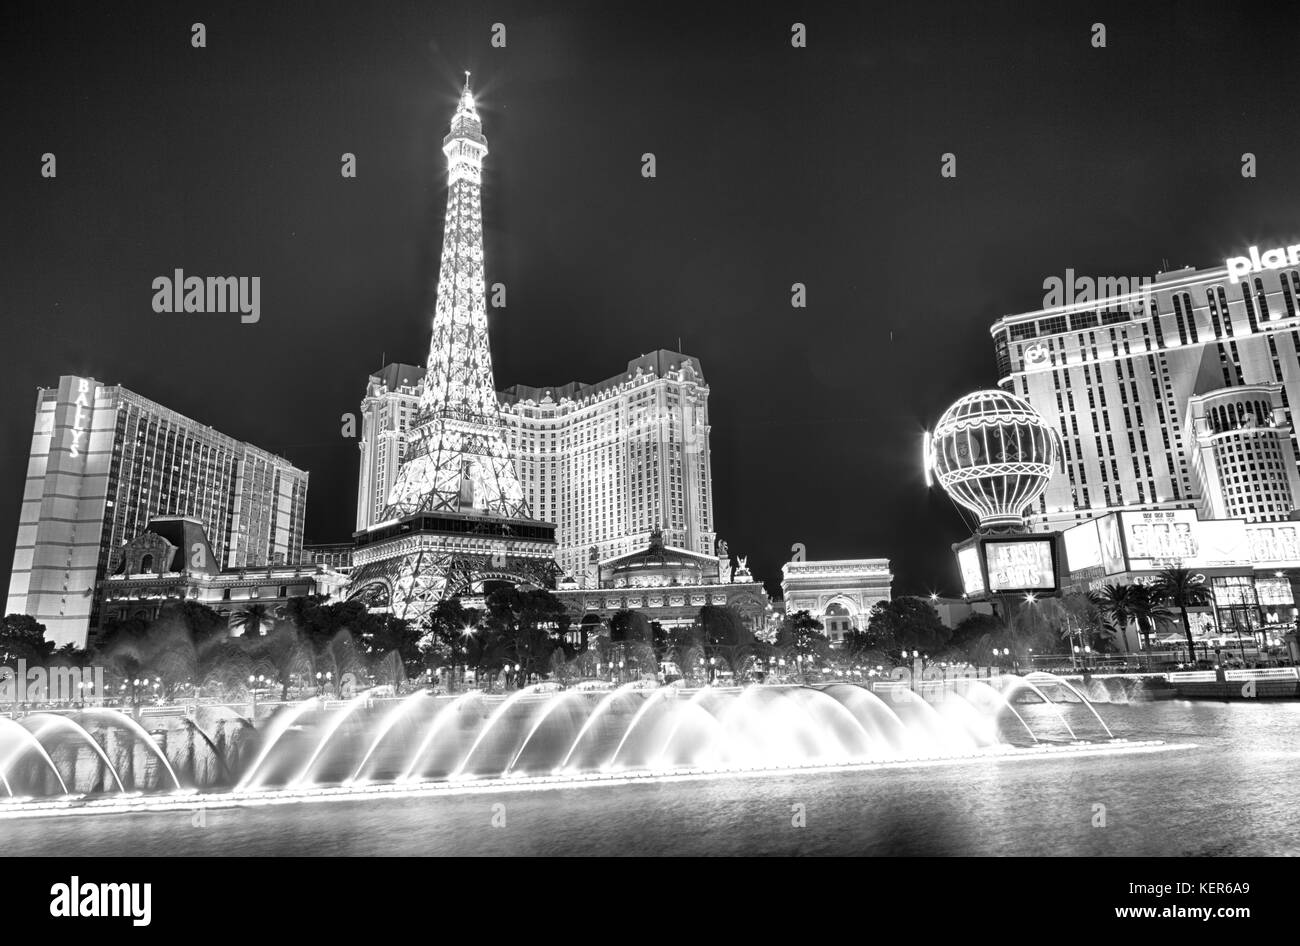 13 septembre 2016, las vegas nevada : l'hôtel et casino de paris vu de la fontaine du Bellagio après la tombée de la nuit. Banque D'Images